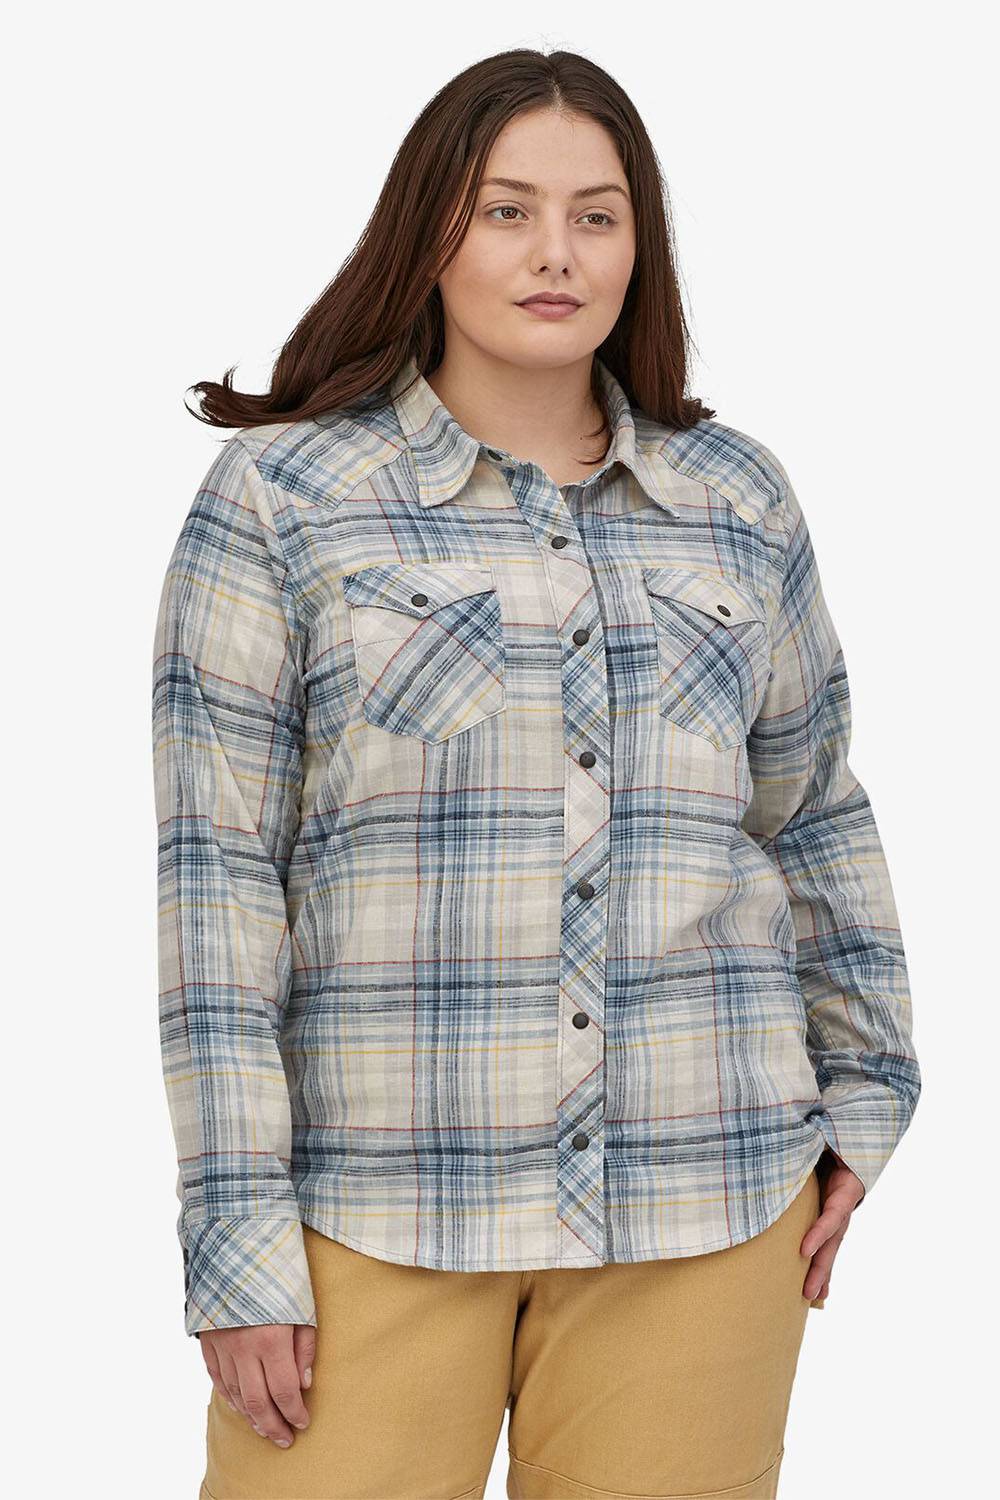 patagonia women affordable hemp shirts